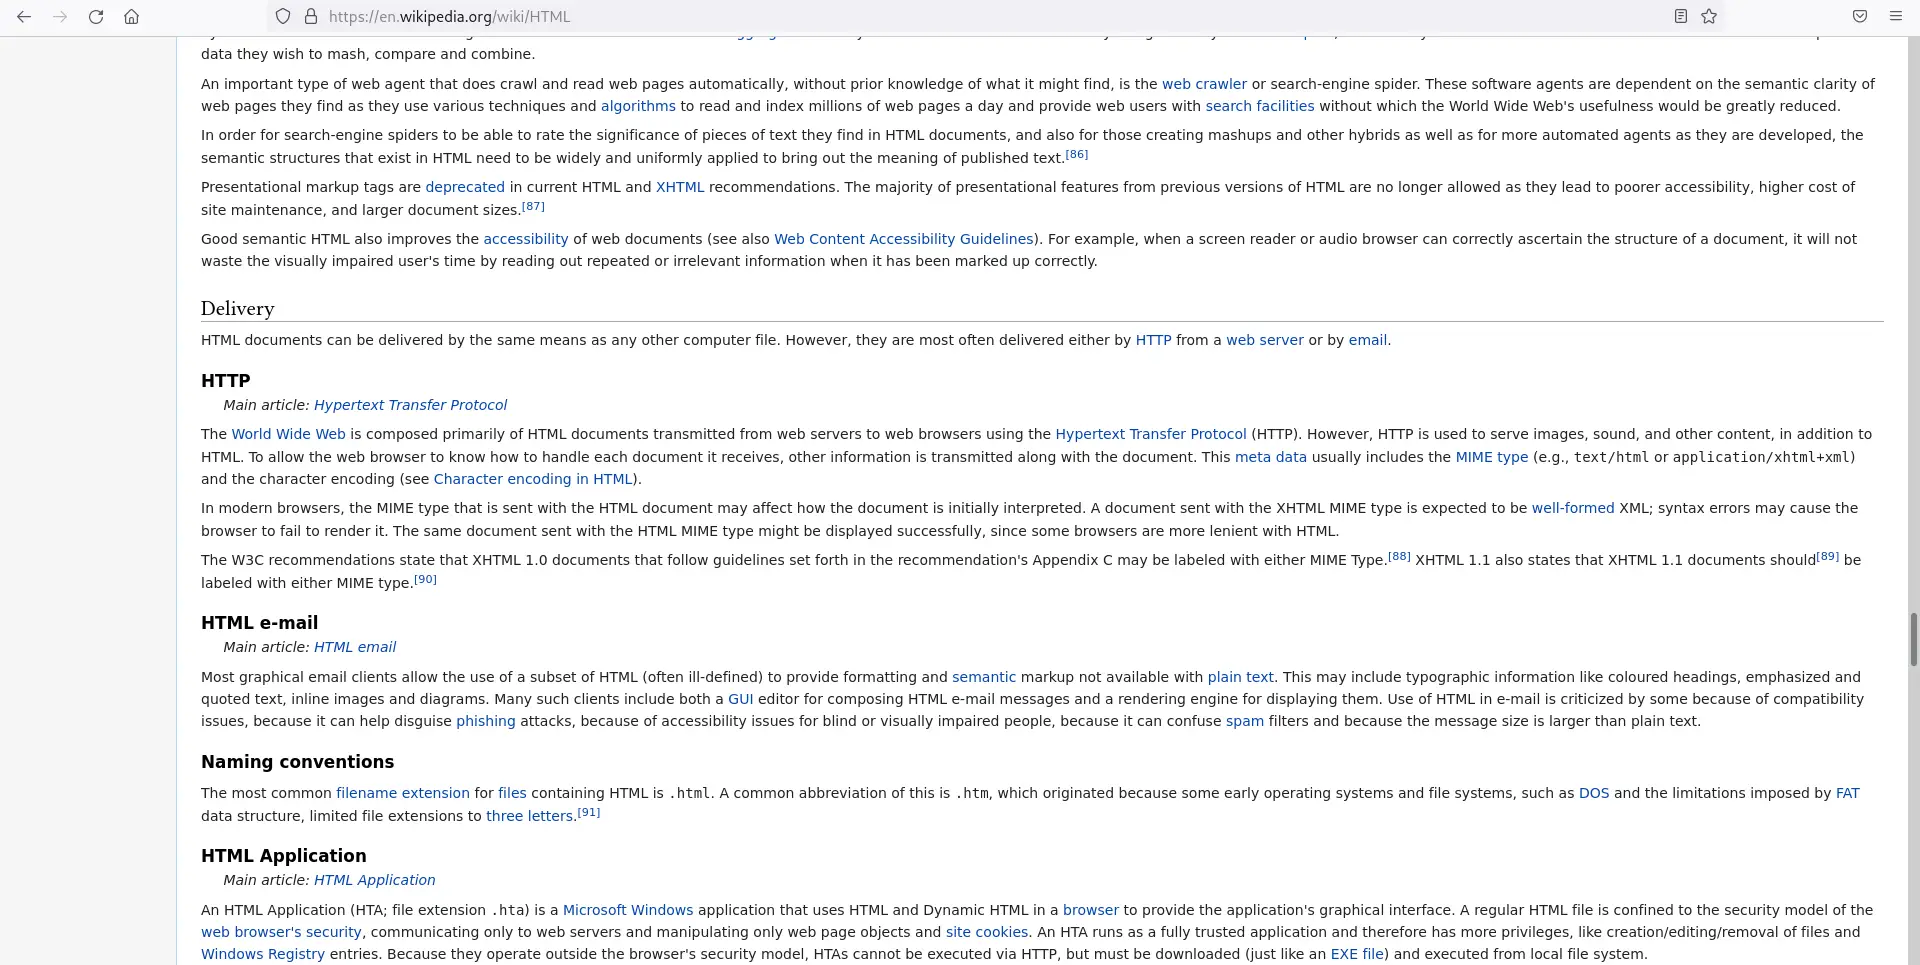 关于 HTML 的维基百科页面